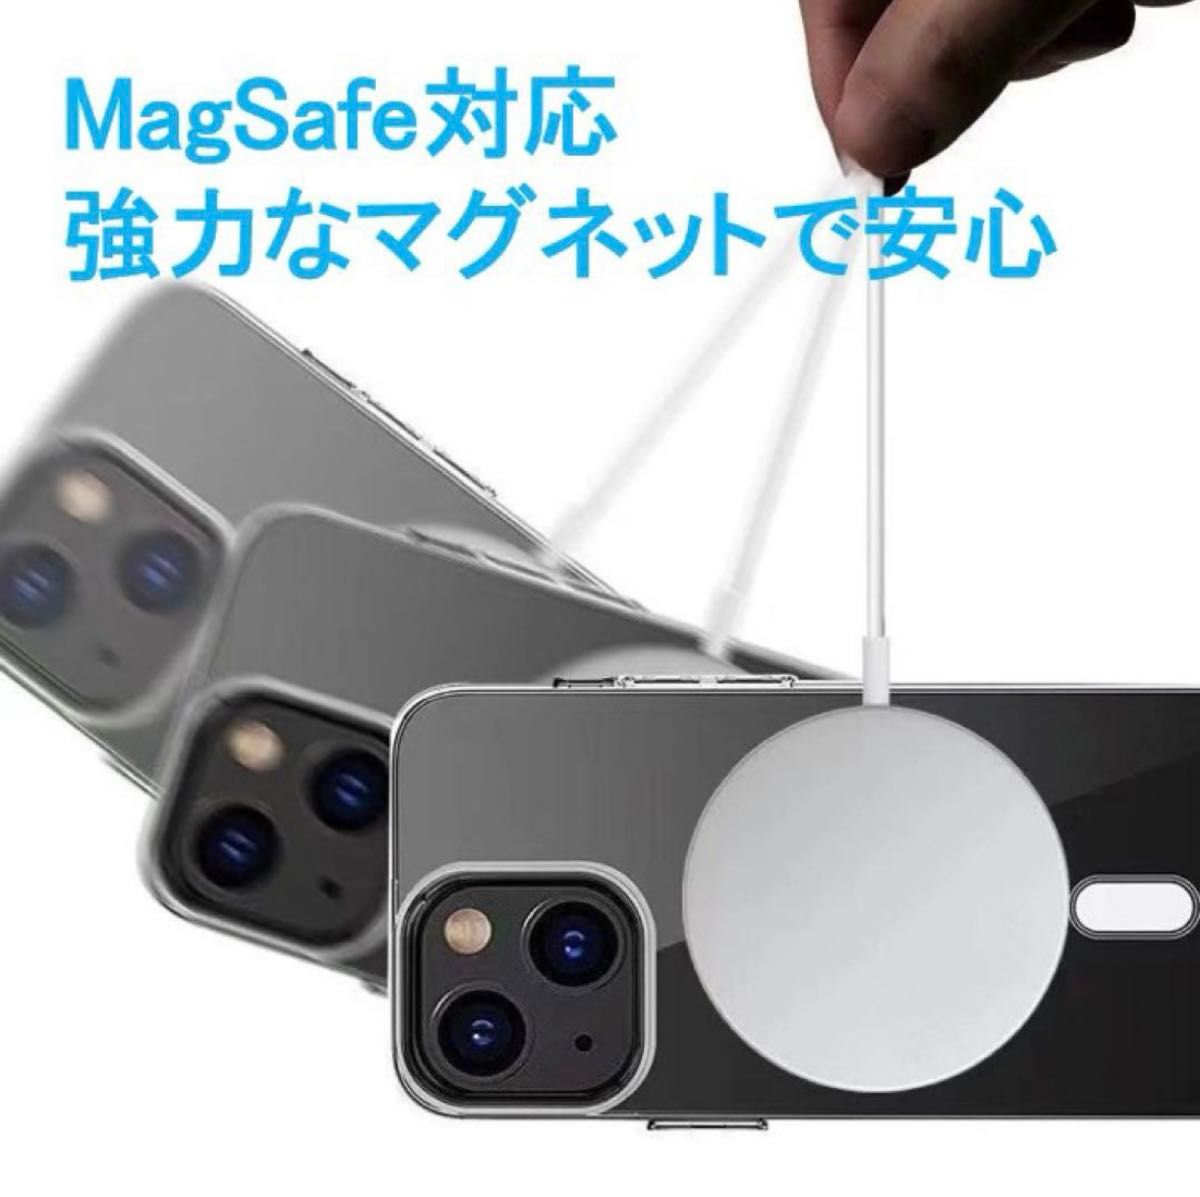 【新品即納】iPhone 15 pro クリア ケース マグセーフ対応 アイフォン アイホン Magsafe 激安 透明